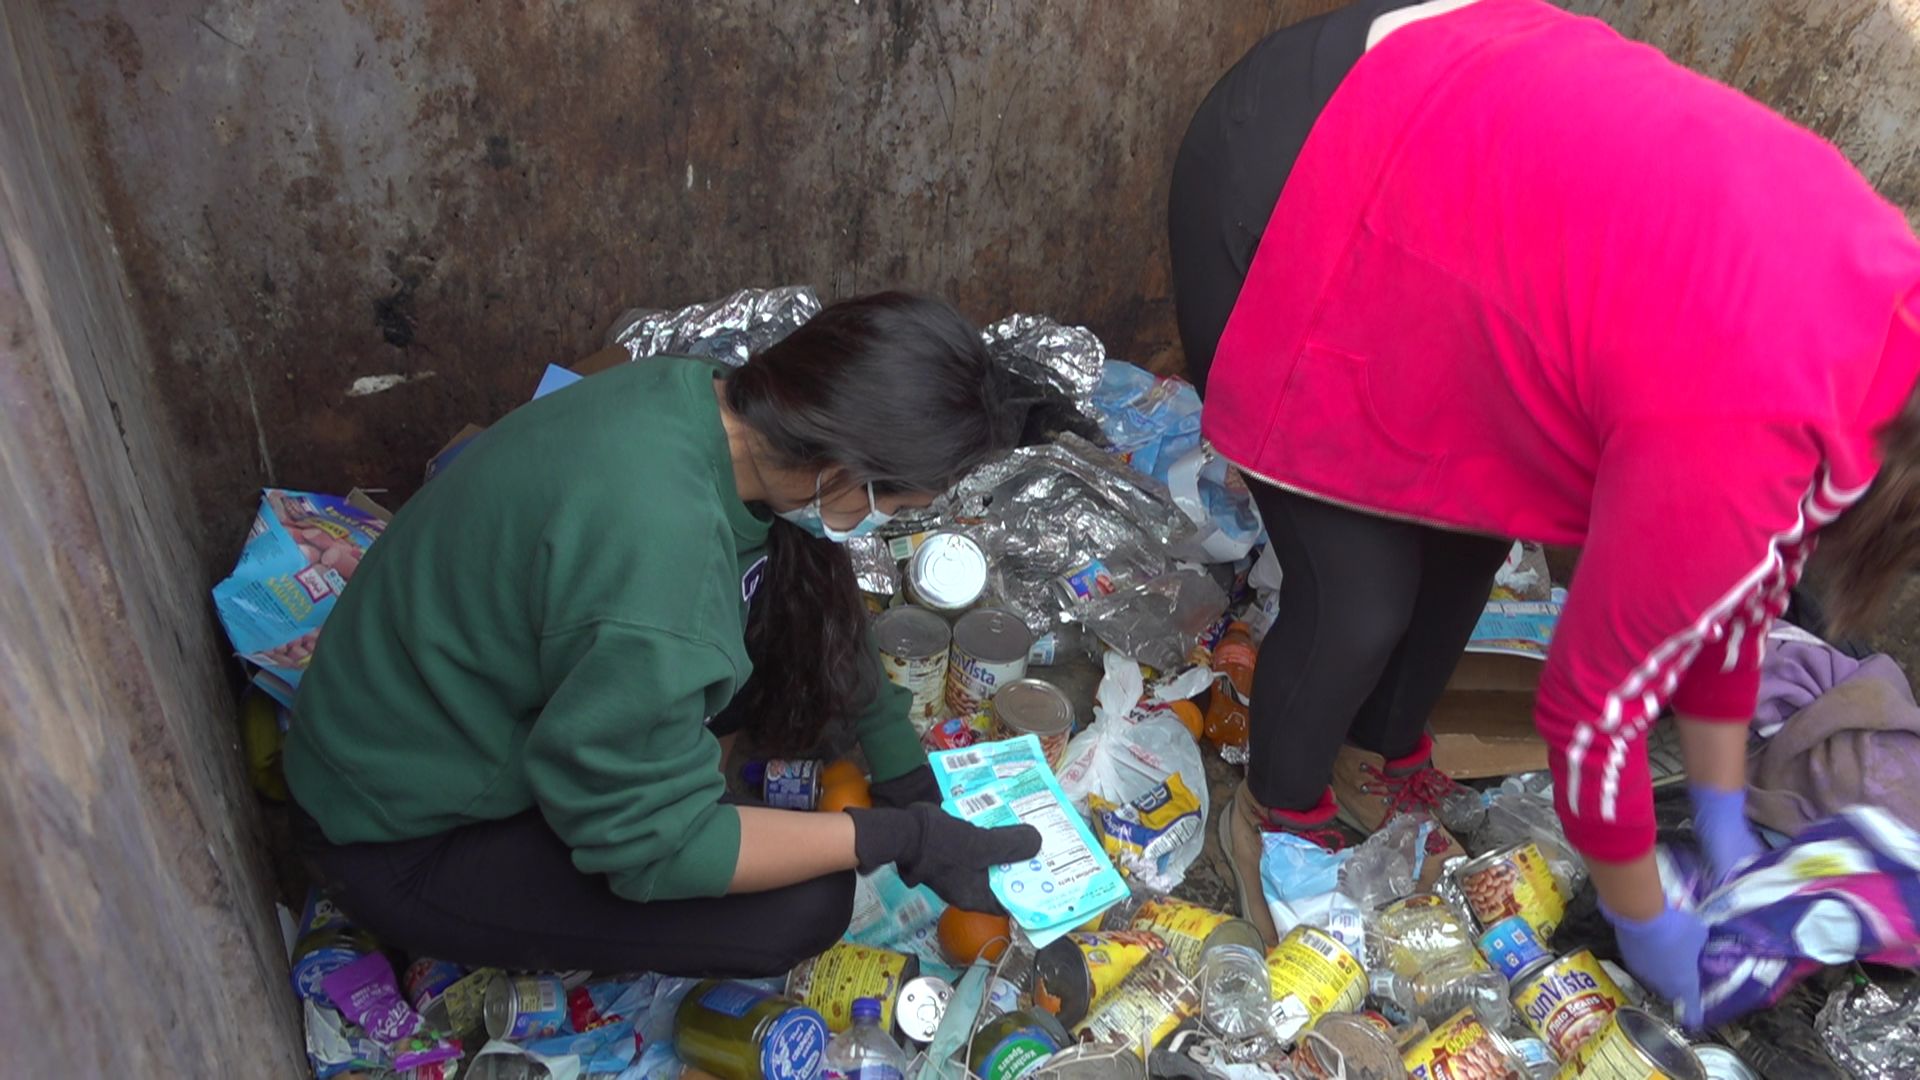 Un groupe de citoyens de Yuma tente de récupérer des denrées alimentaires jetées volontairement à la poubelle pendant la nuit. Janvier 2022.